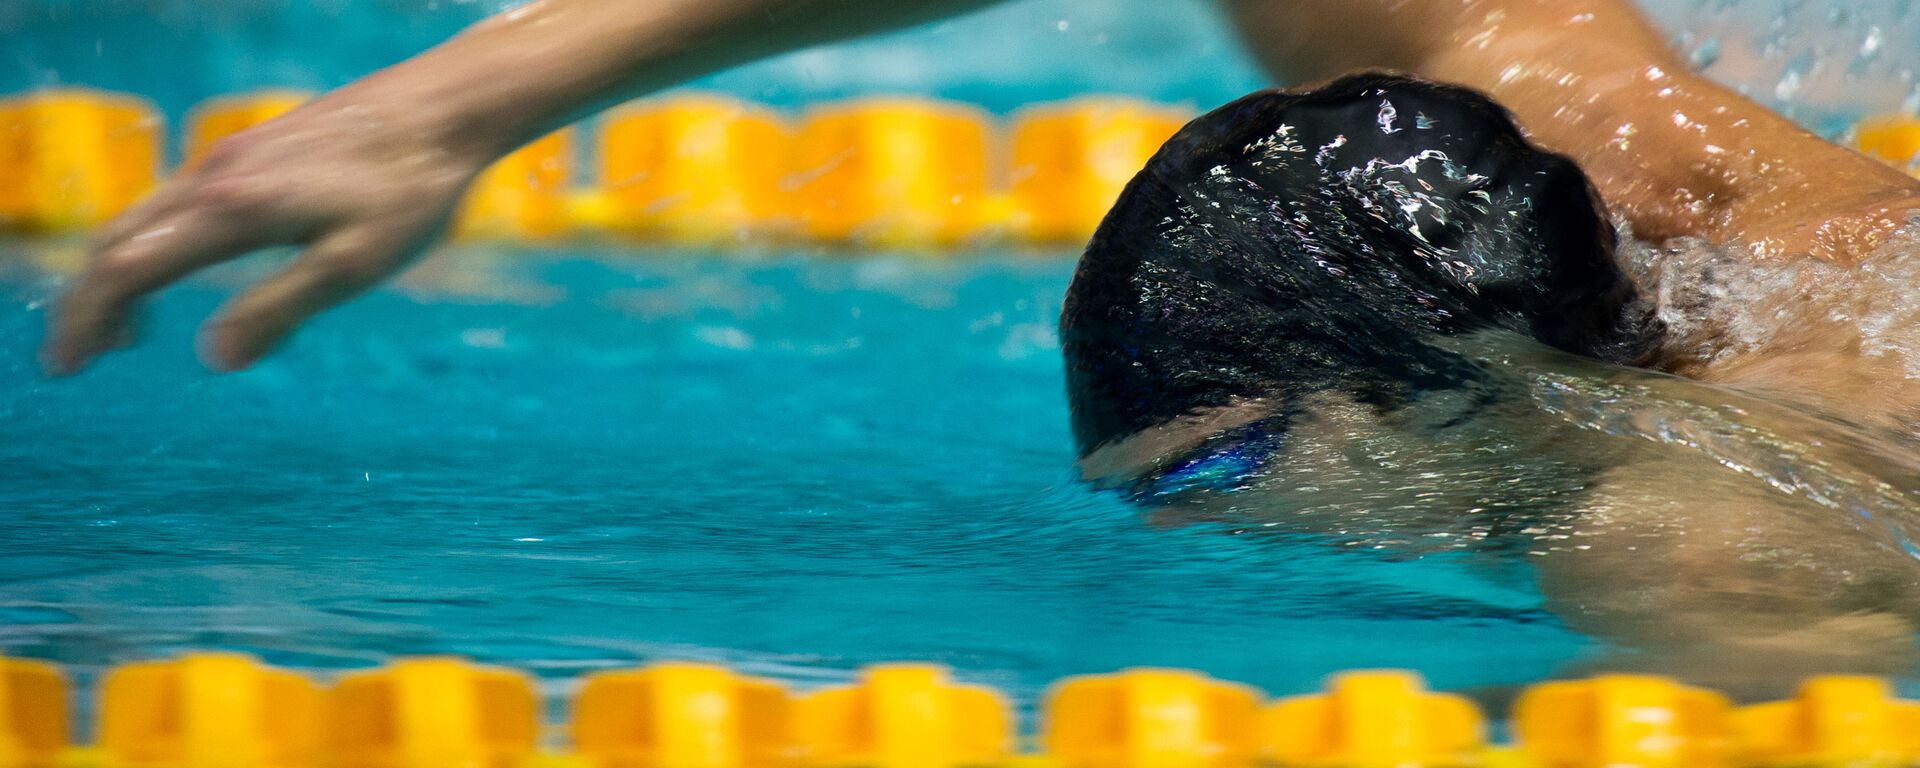 Пловец в финальном заплыве на дистанции 200 метров вольным стилем  - Sputnik Таджикистан, 1920, 30.07.2021